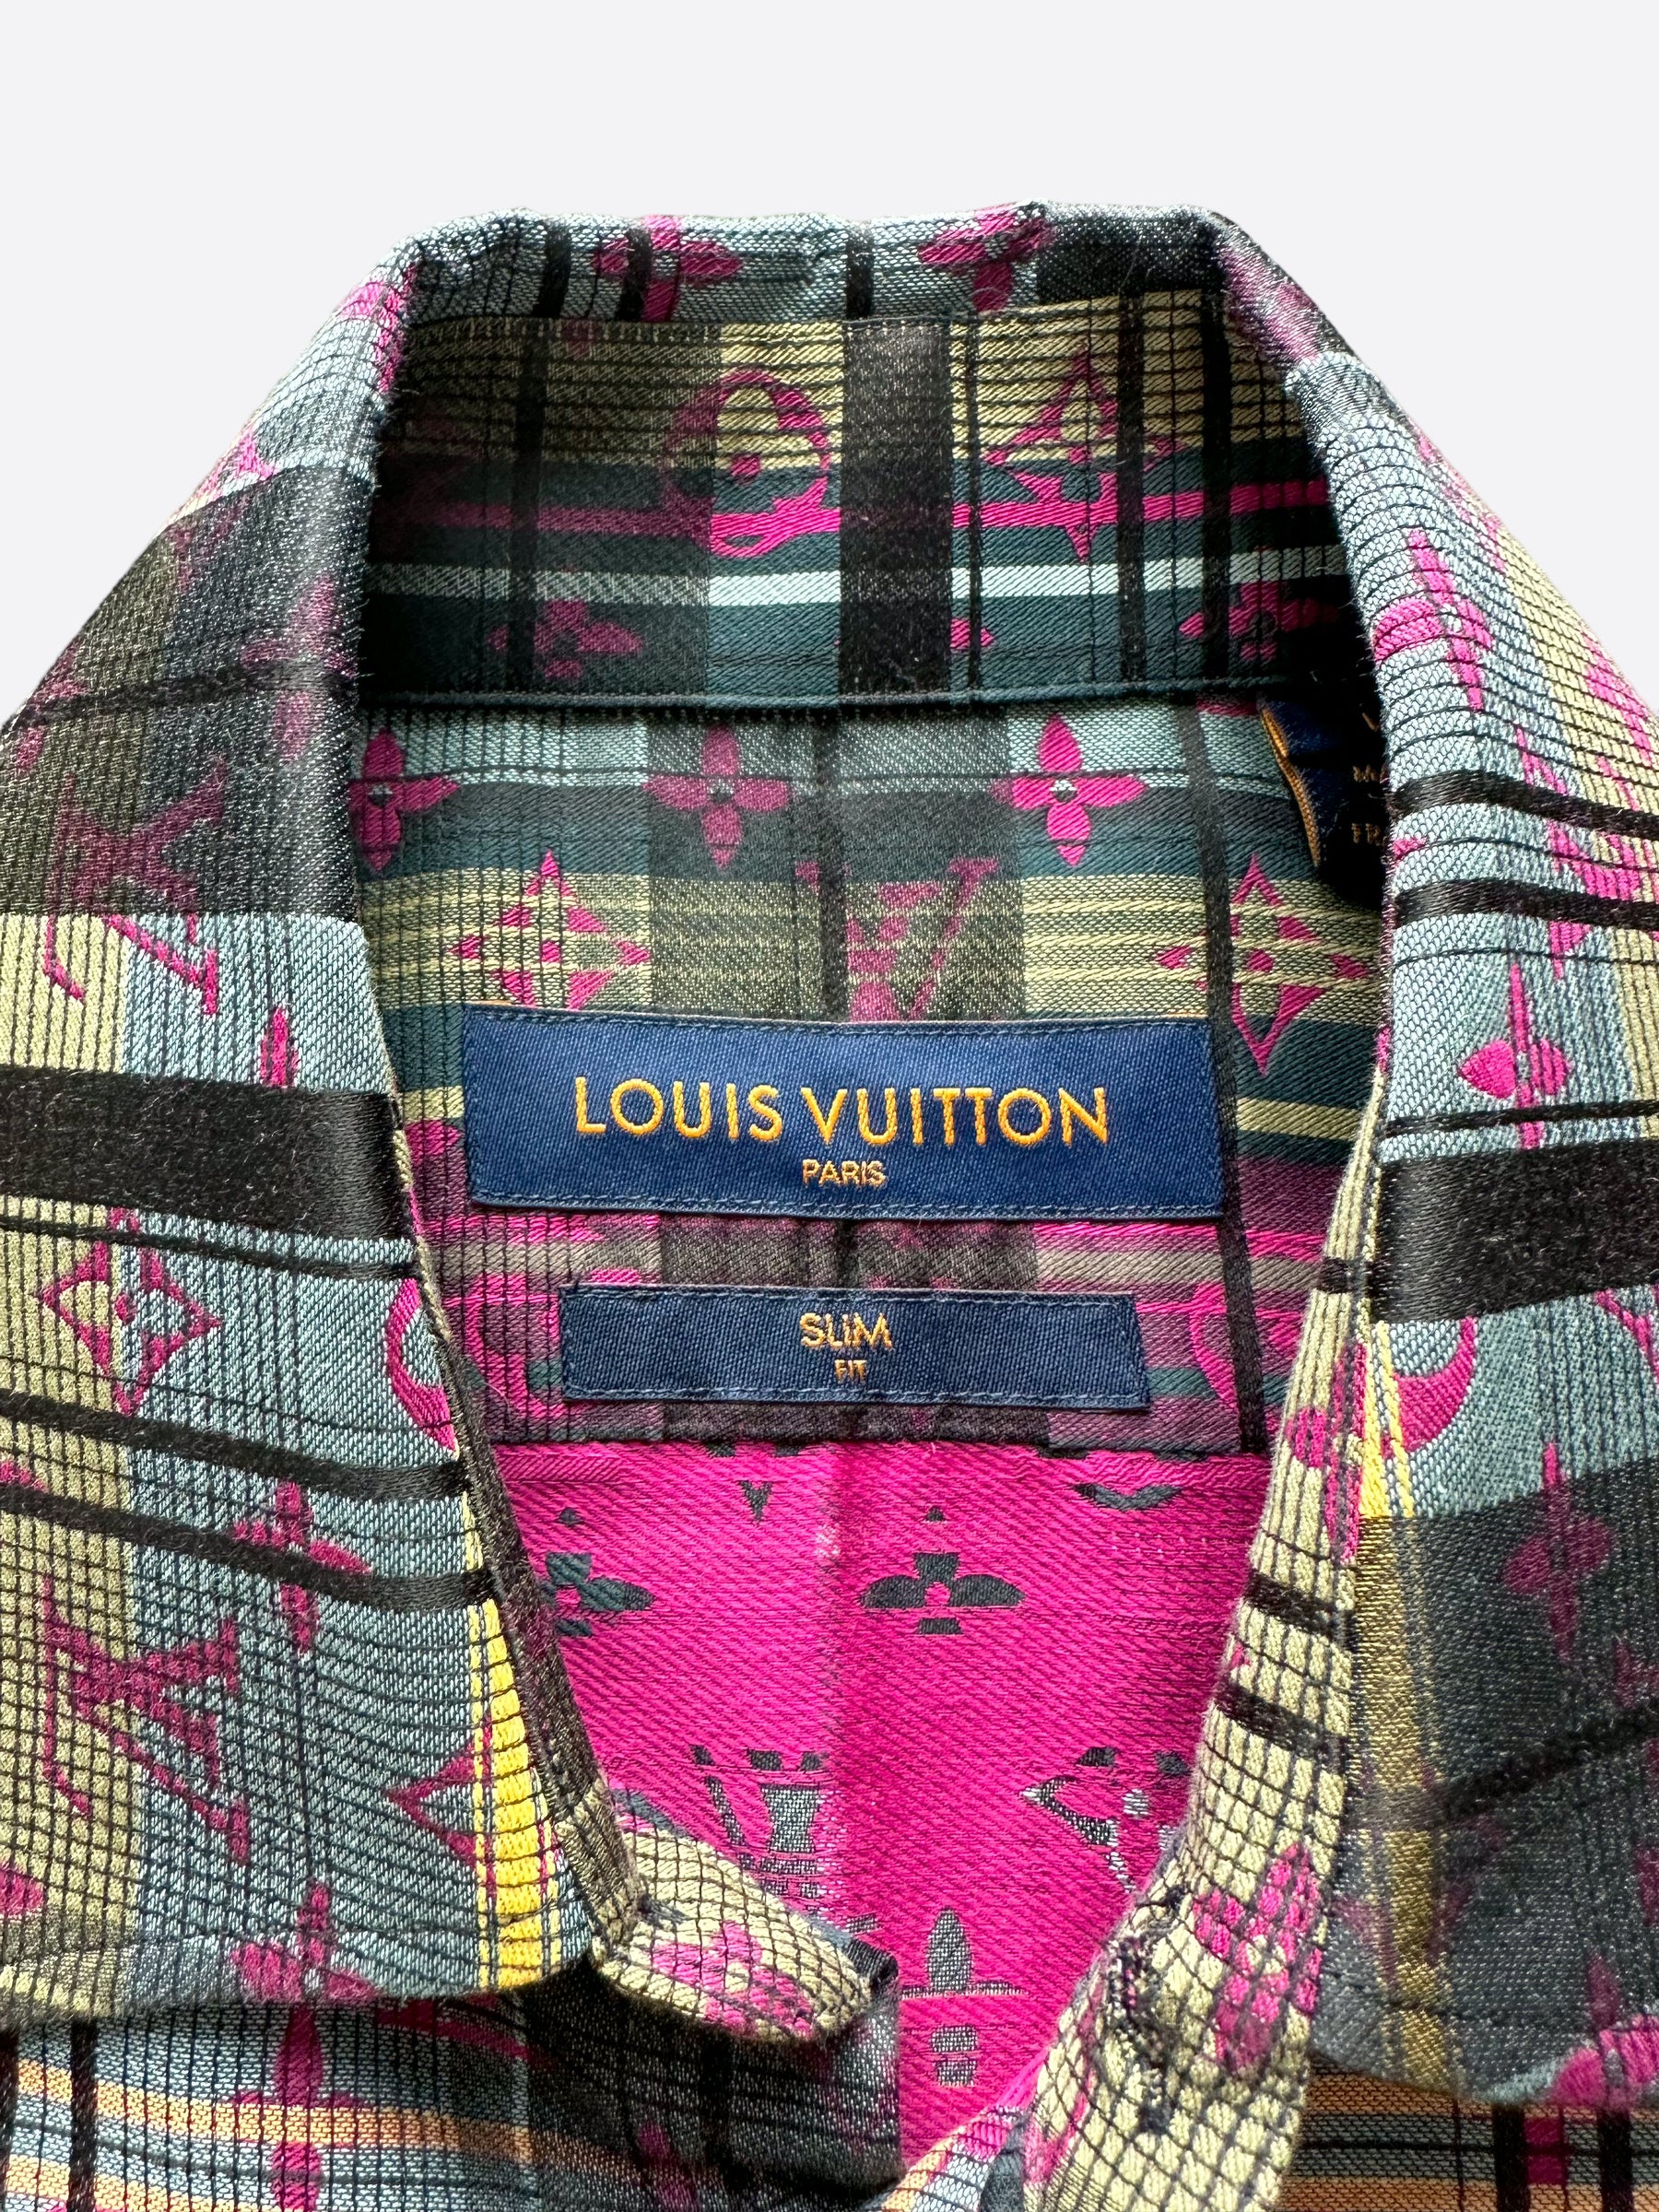 Flannel+Louis Vutton  Louis vuitton shopper, Louis vuitton